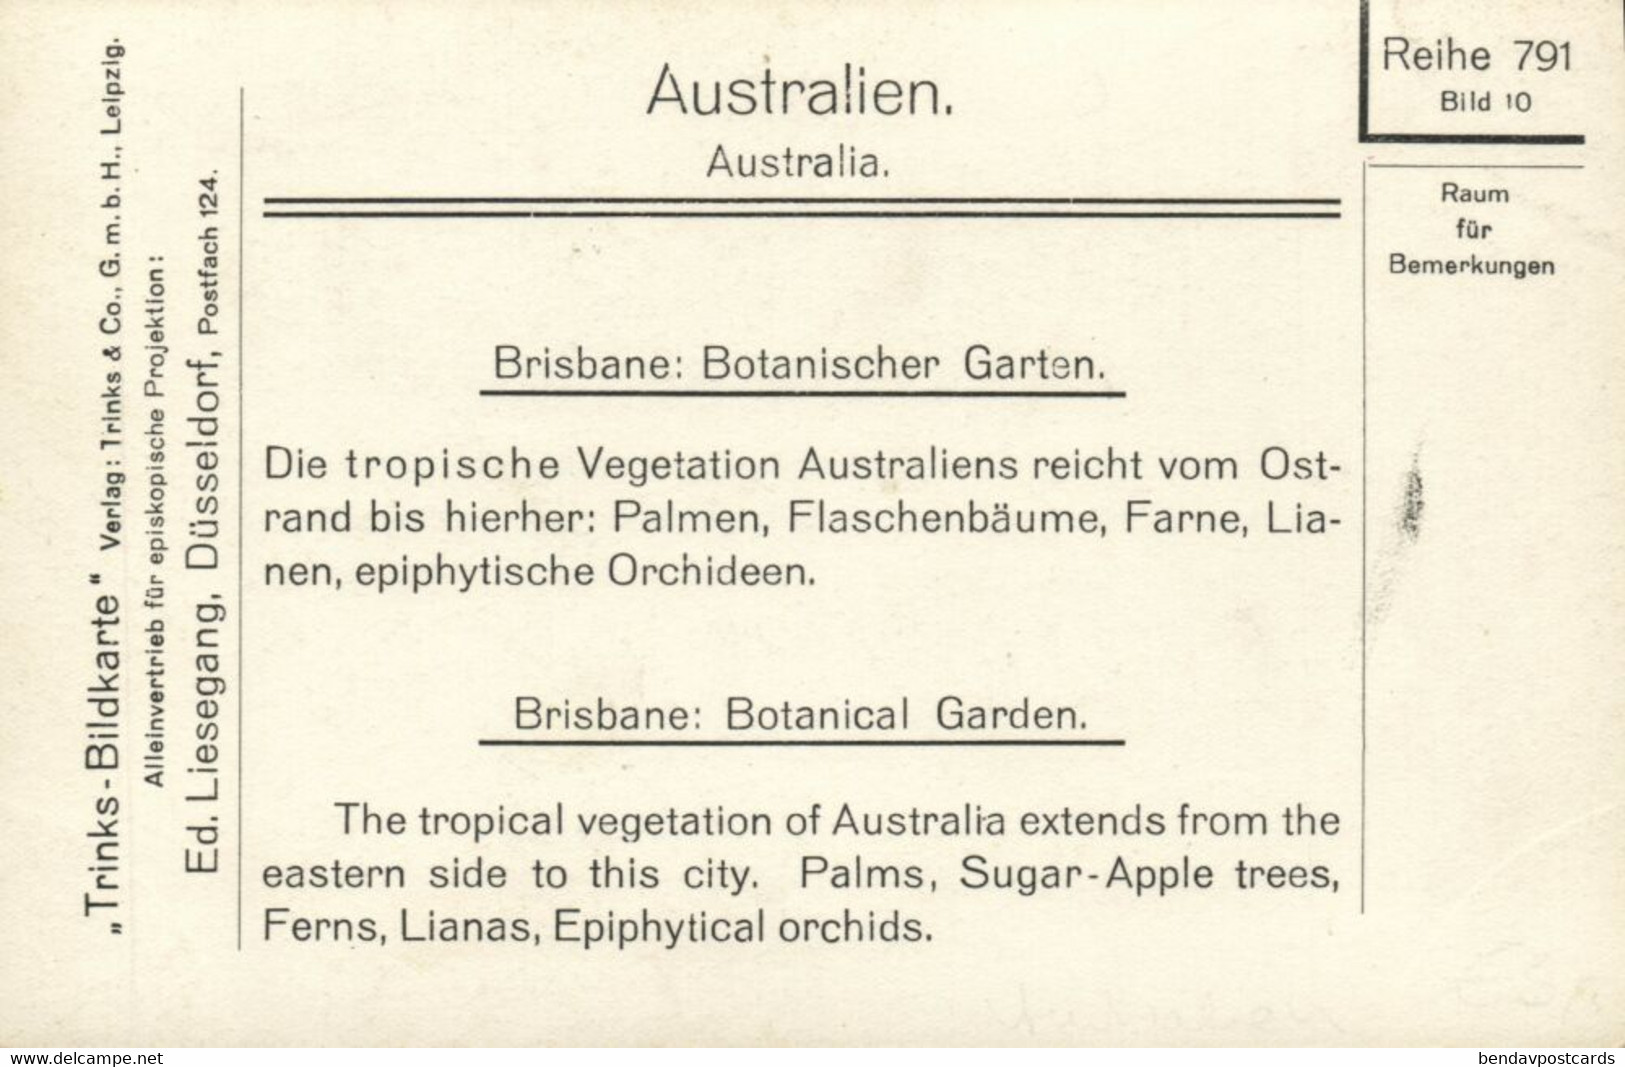 Australia, QUEENSLAND, BRISBANE, Botanical Garden, Trinks-Bildkarte No. 791/10 - Brisbane